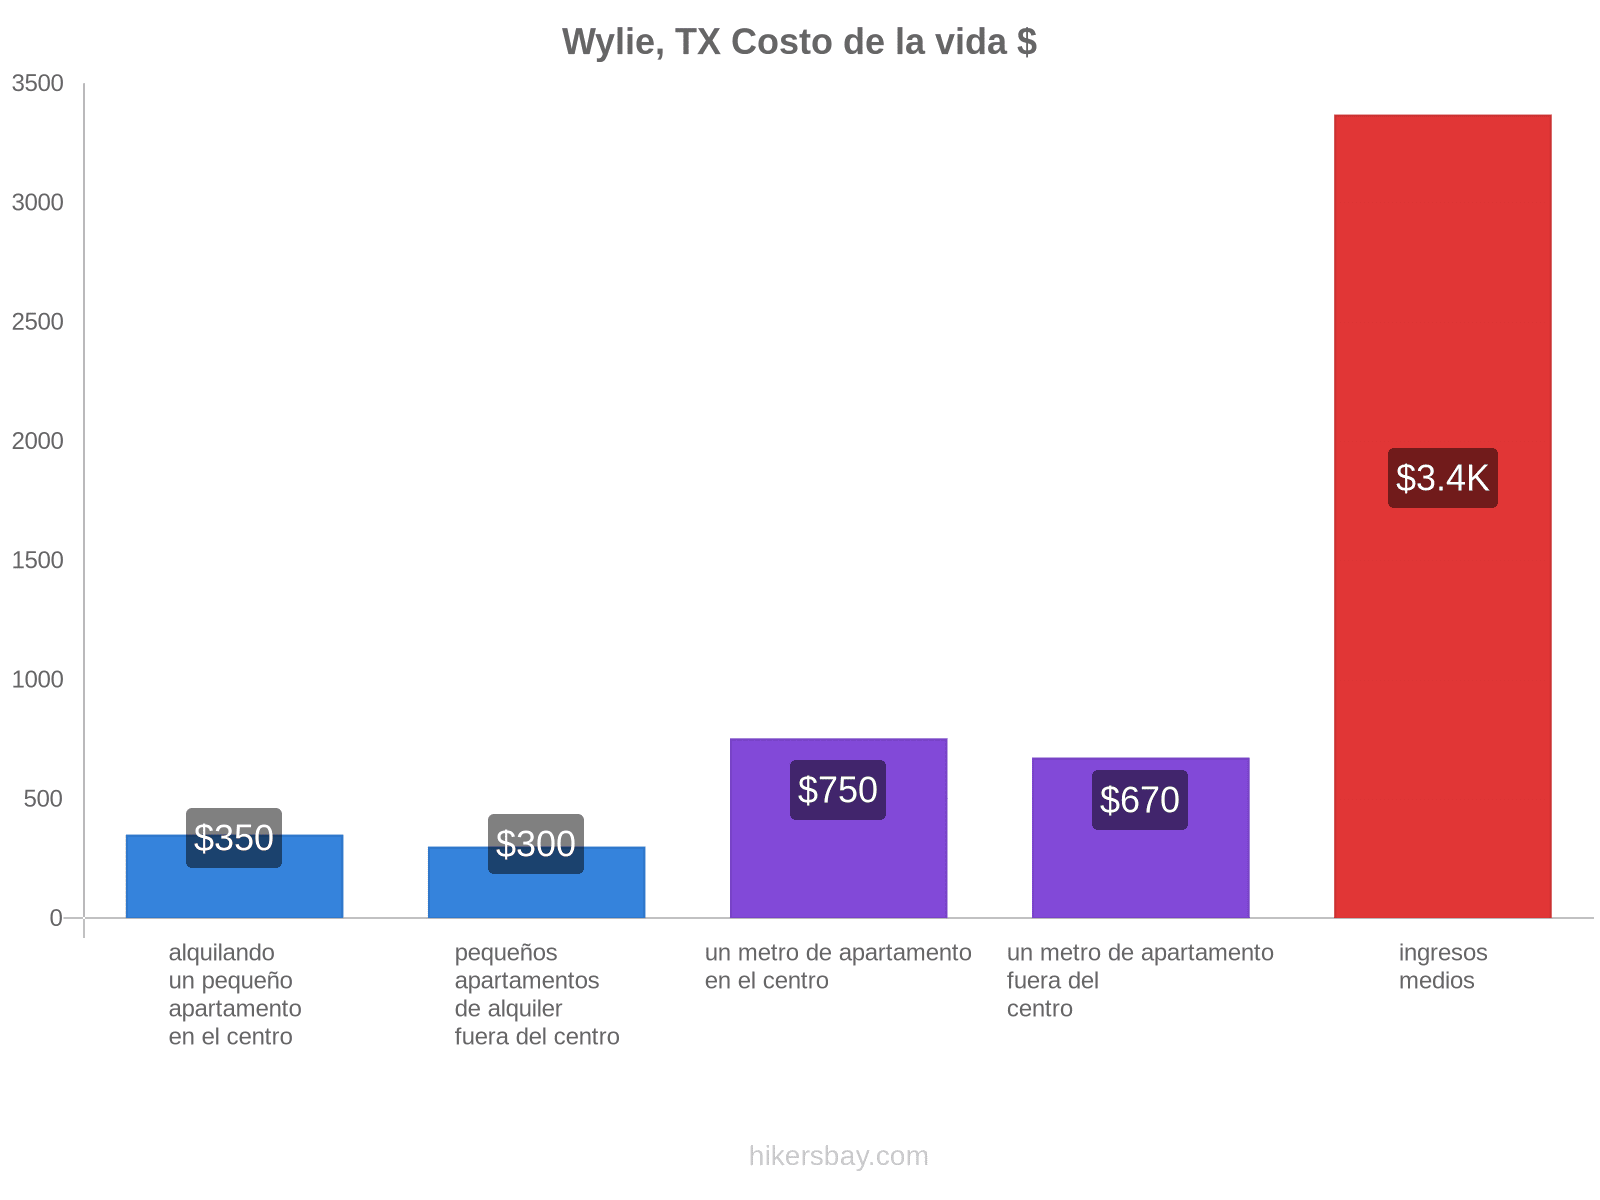 Wylie, TX costo de la vida hikersbay.com